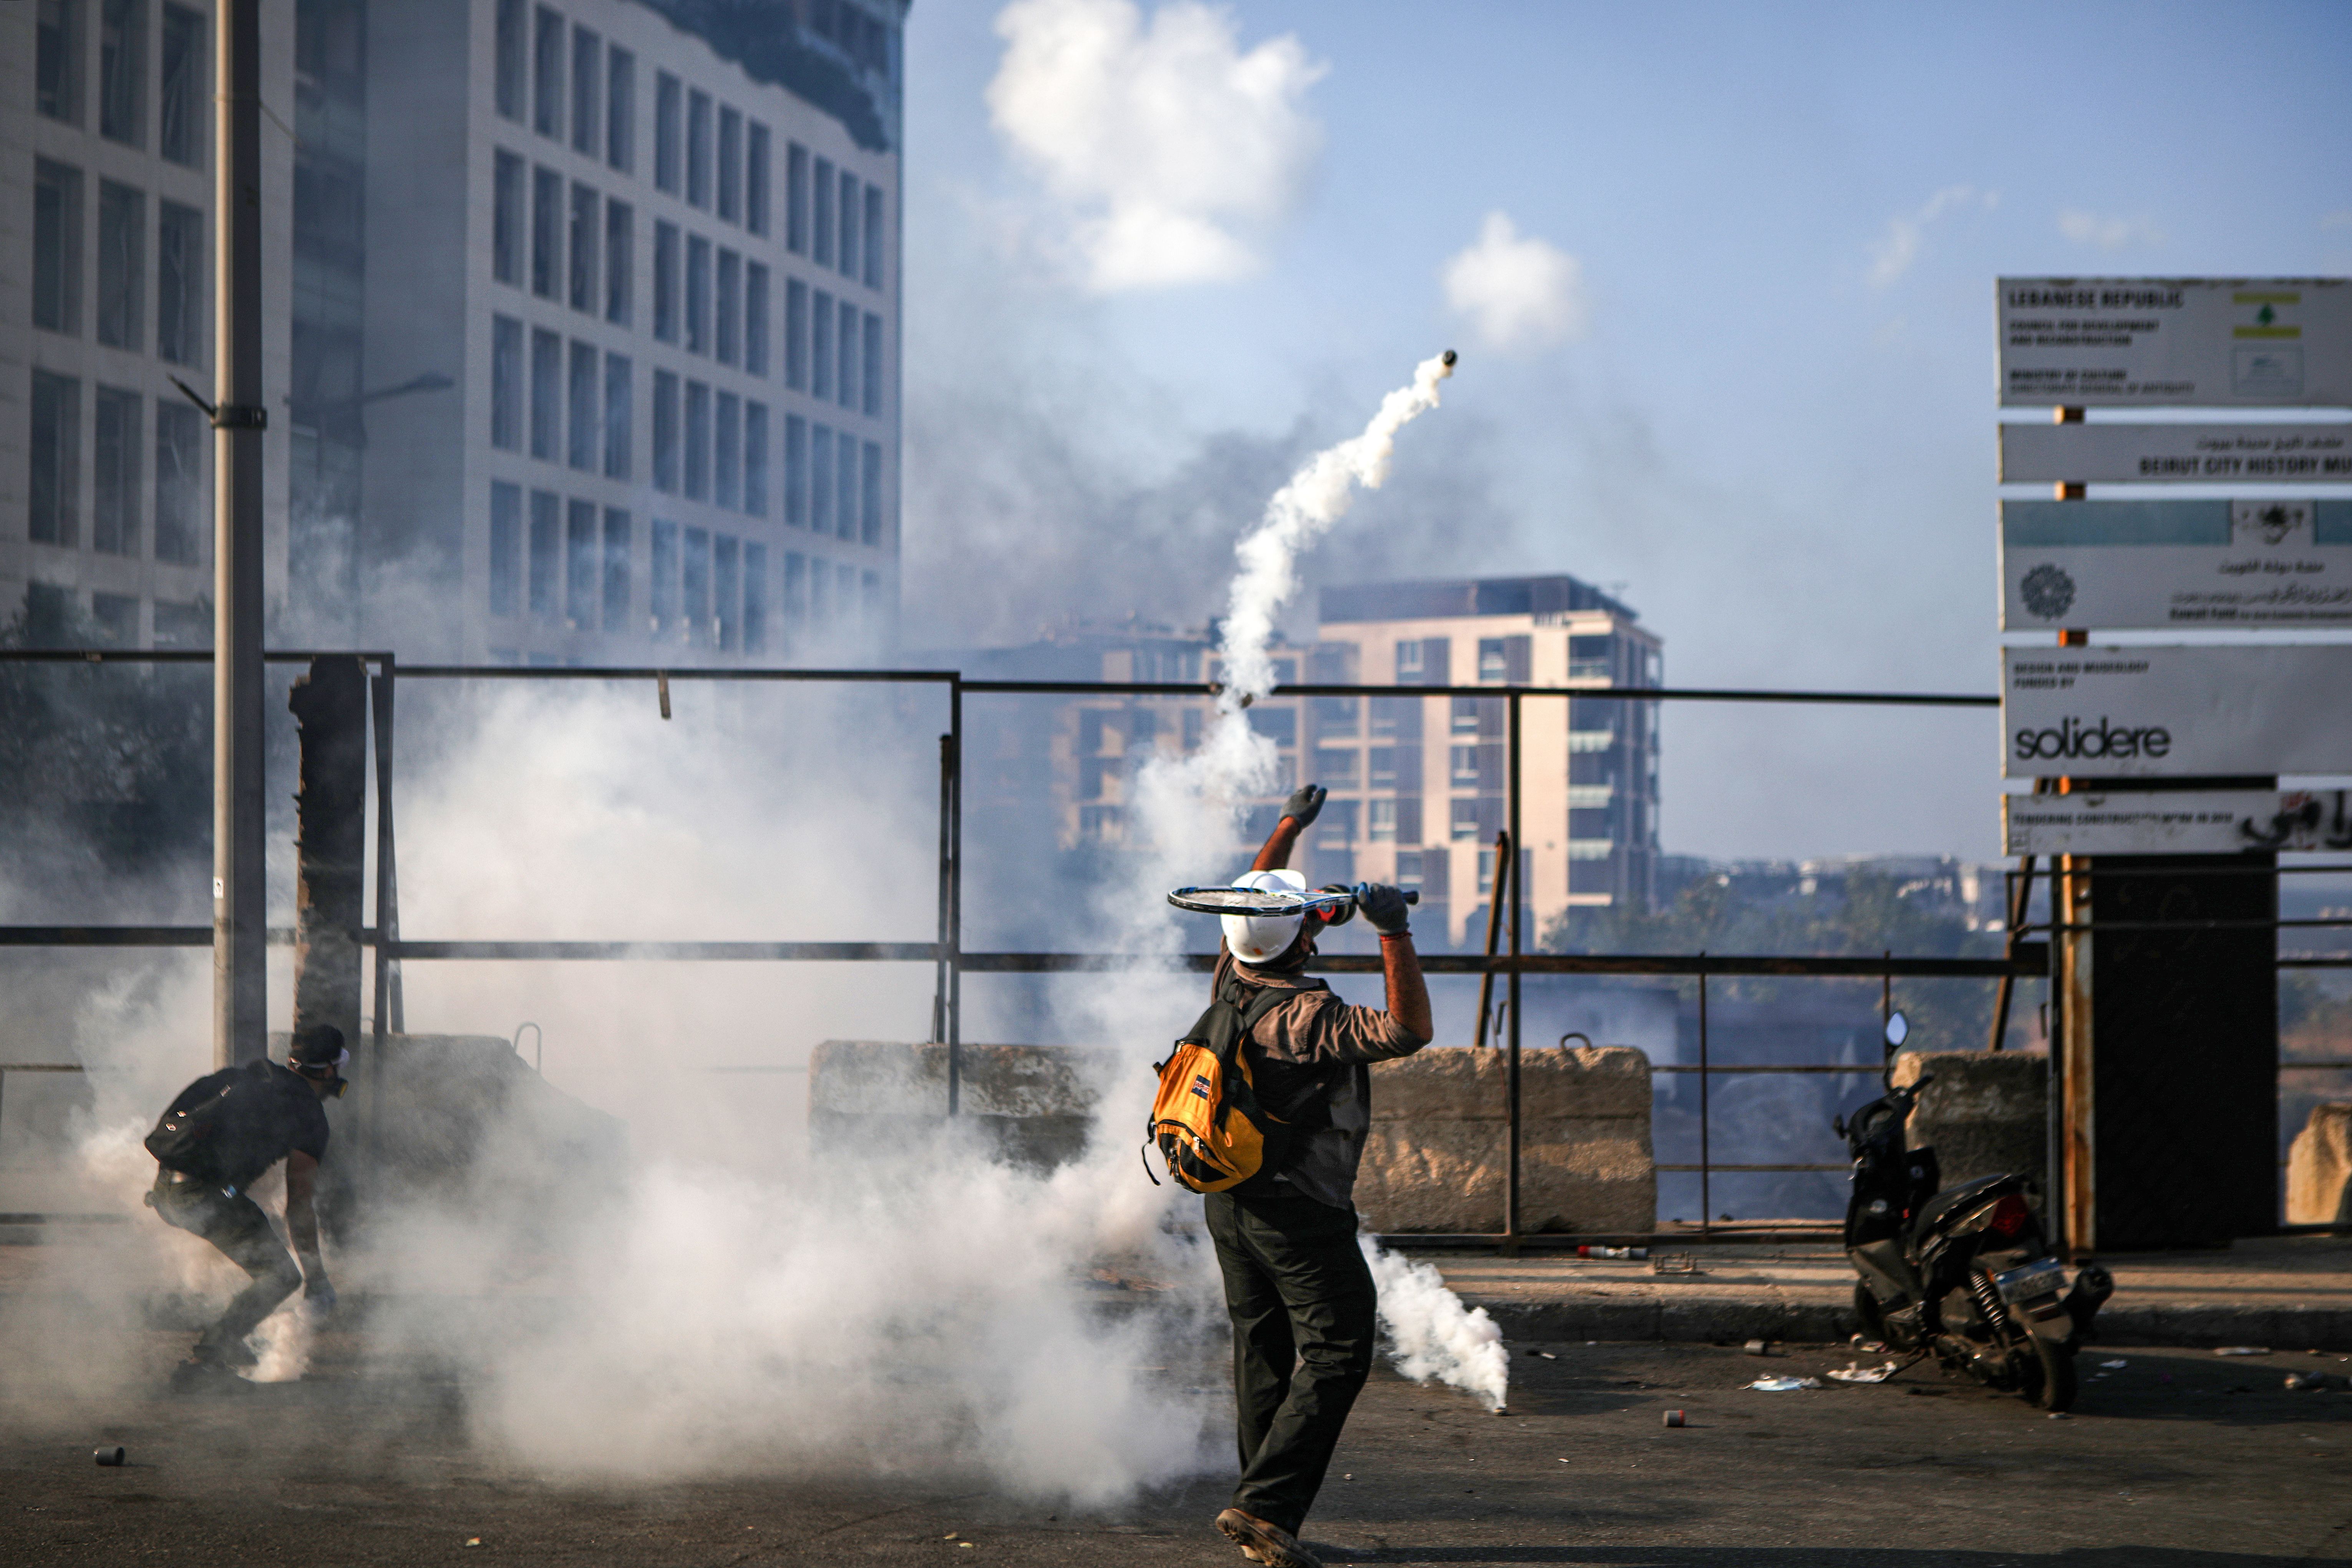 Le foto delle proteste a Beirut (Libano): in pugno anche decine di racchette da tennis